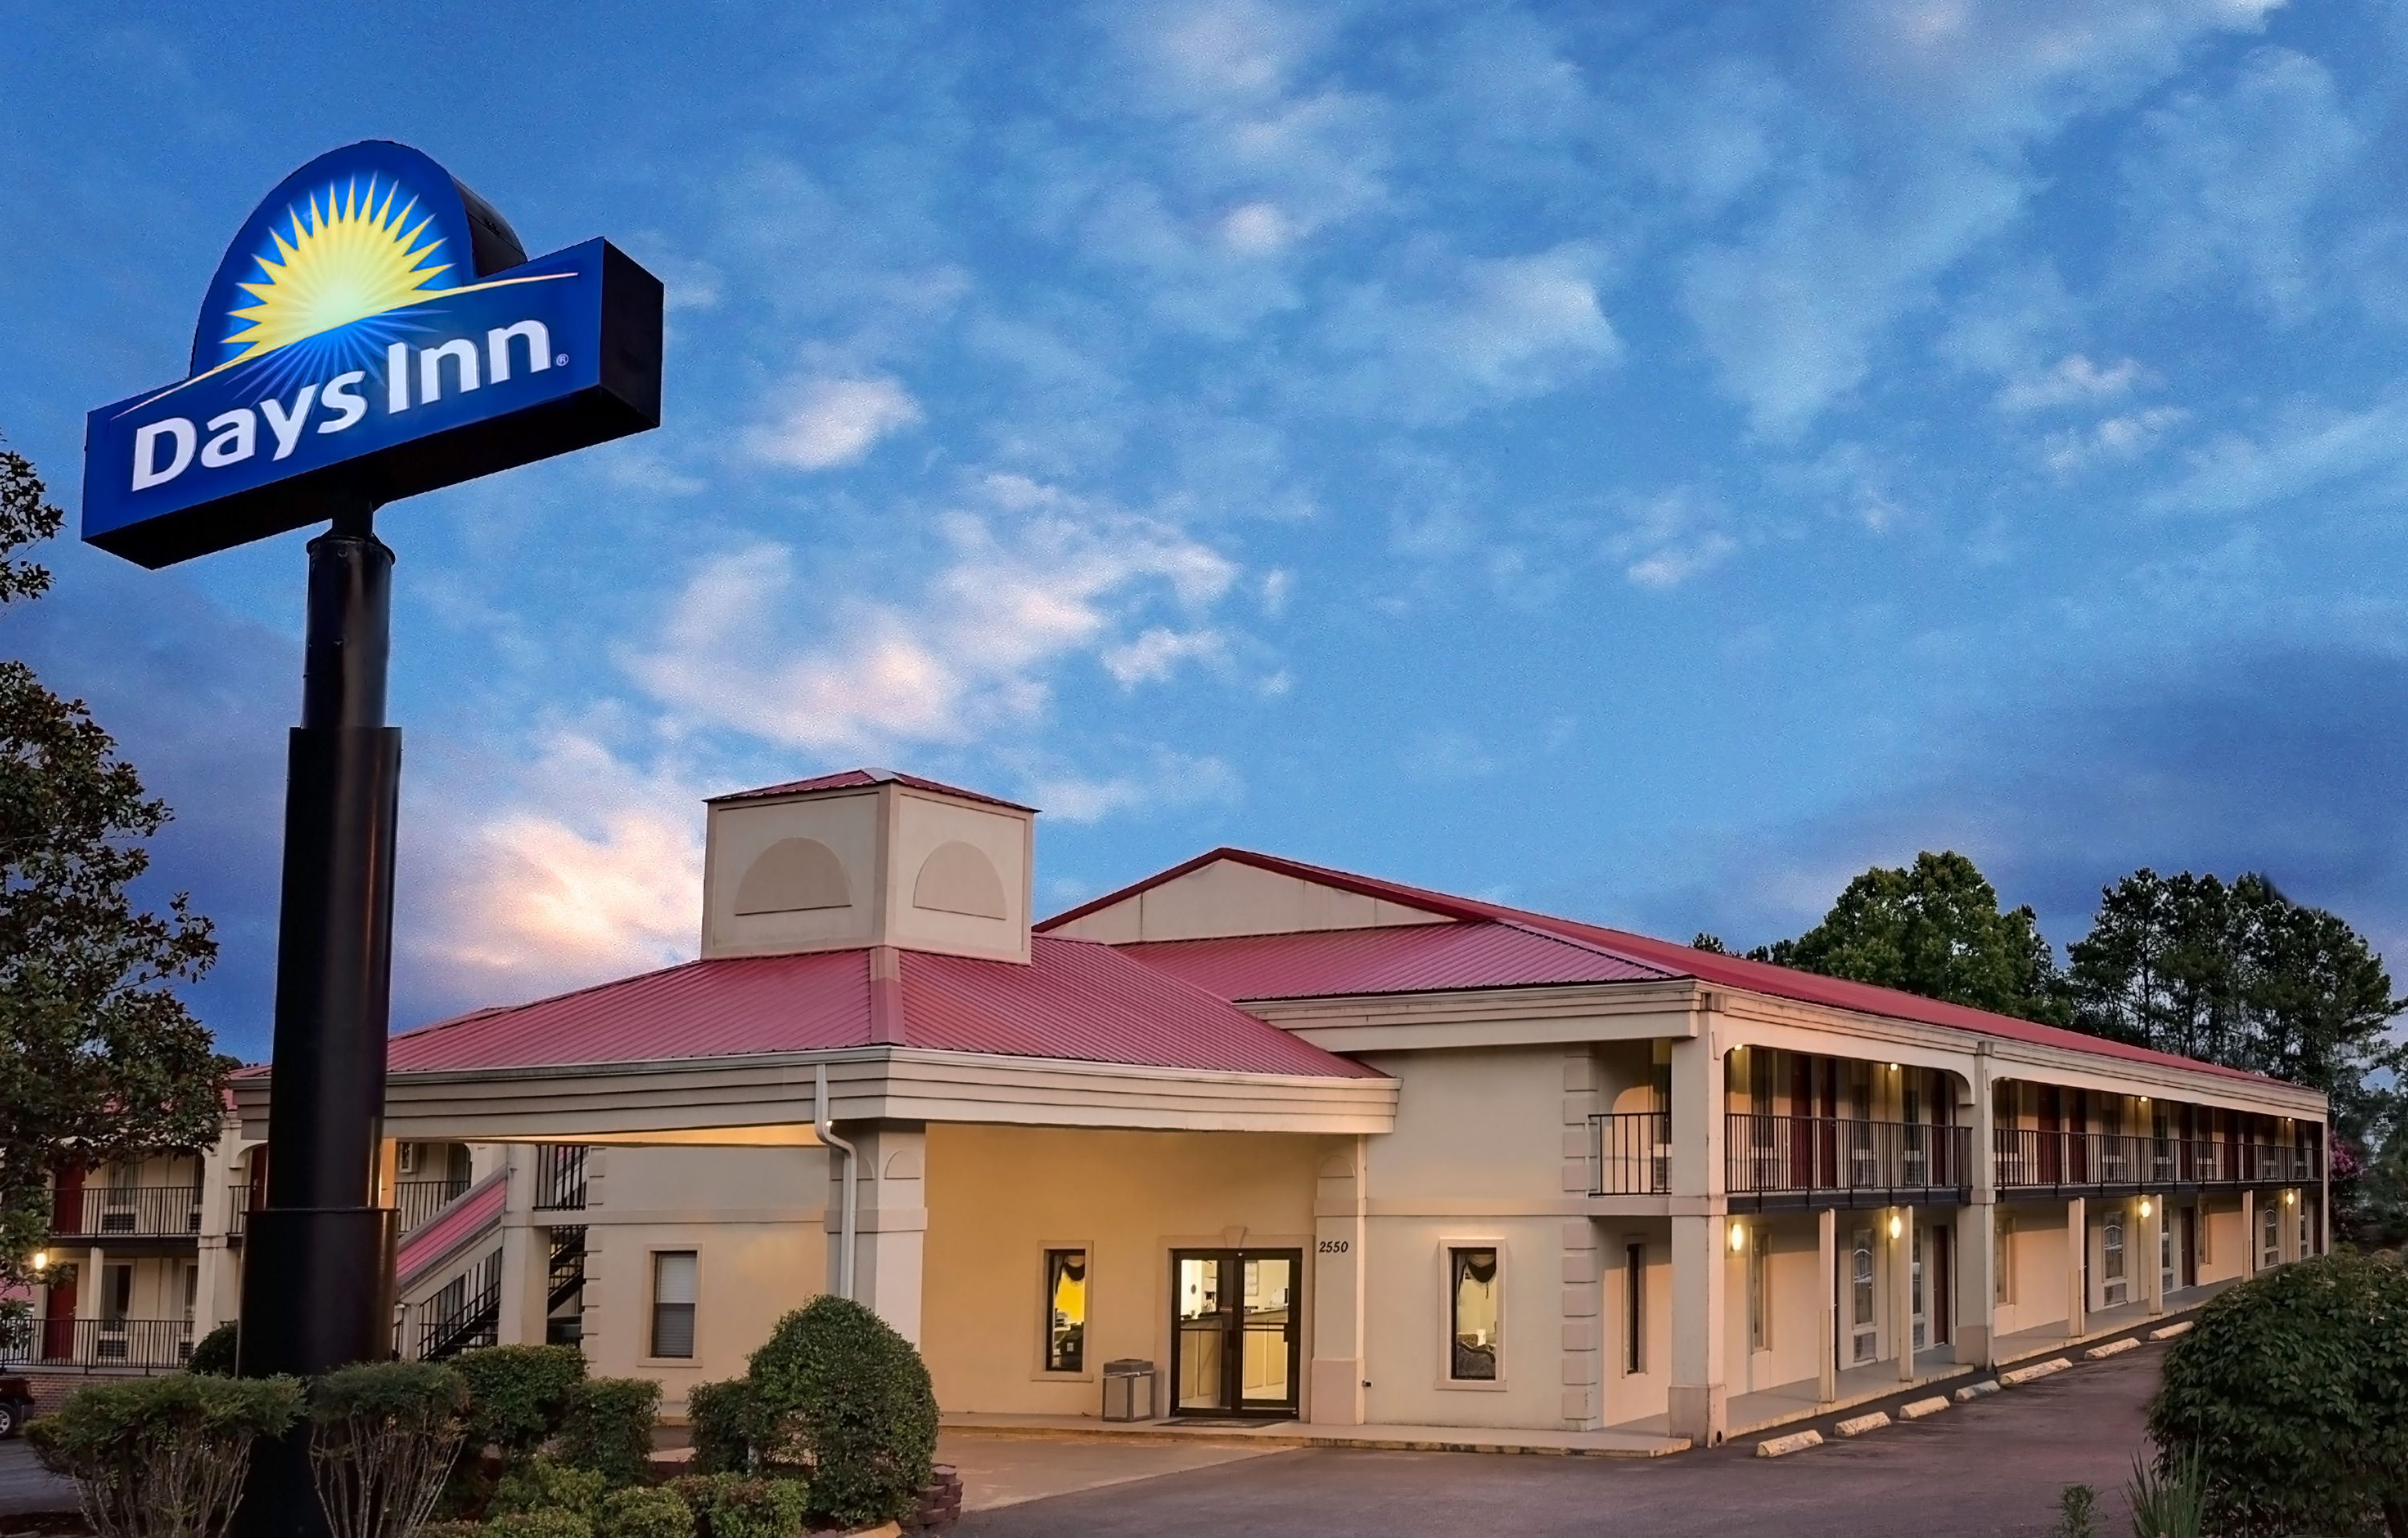 Days Inn by Wyndham Cleveland TN Cleveland, TN Hotels